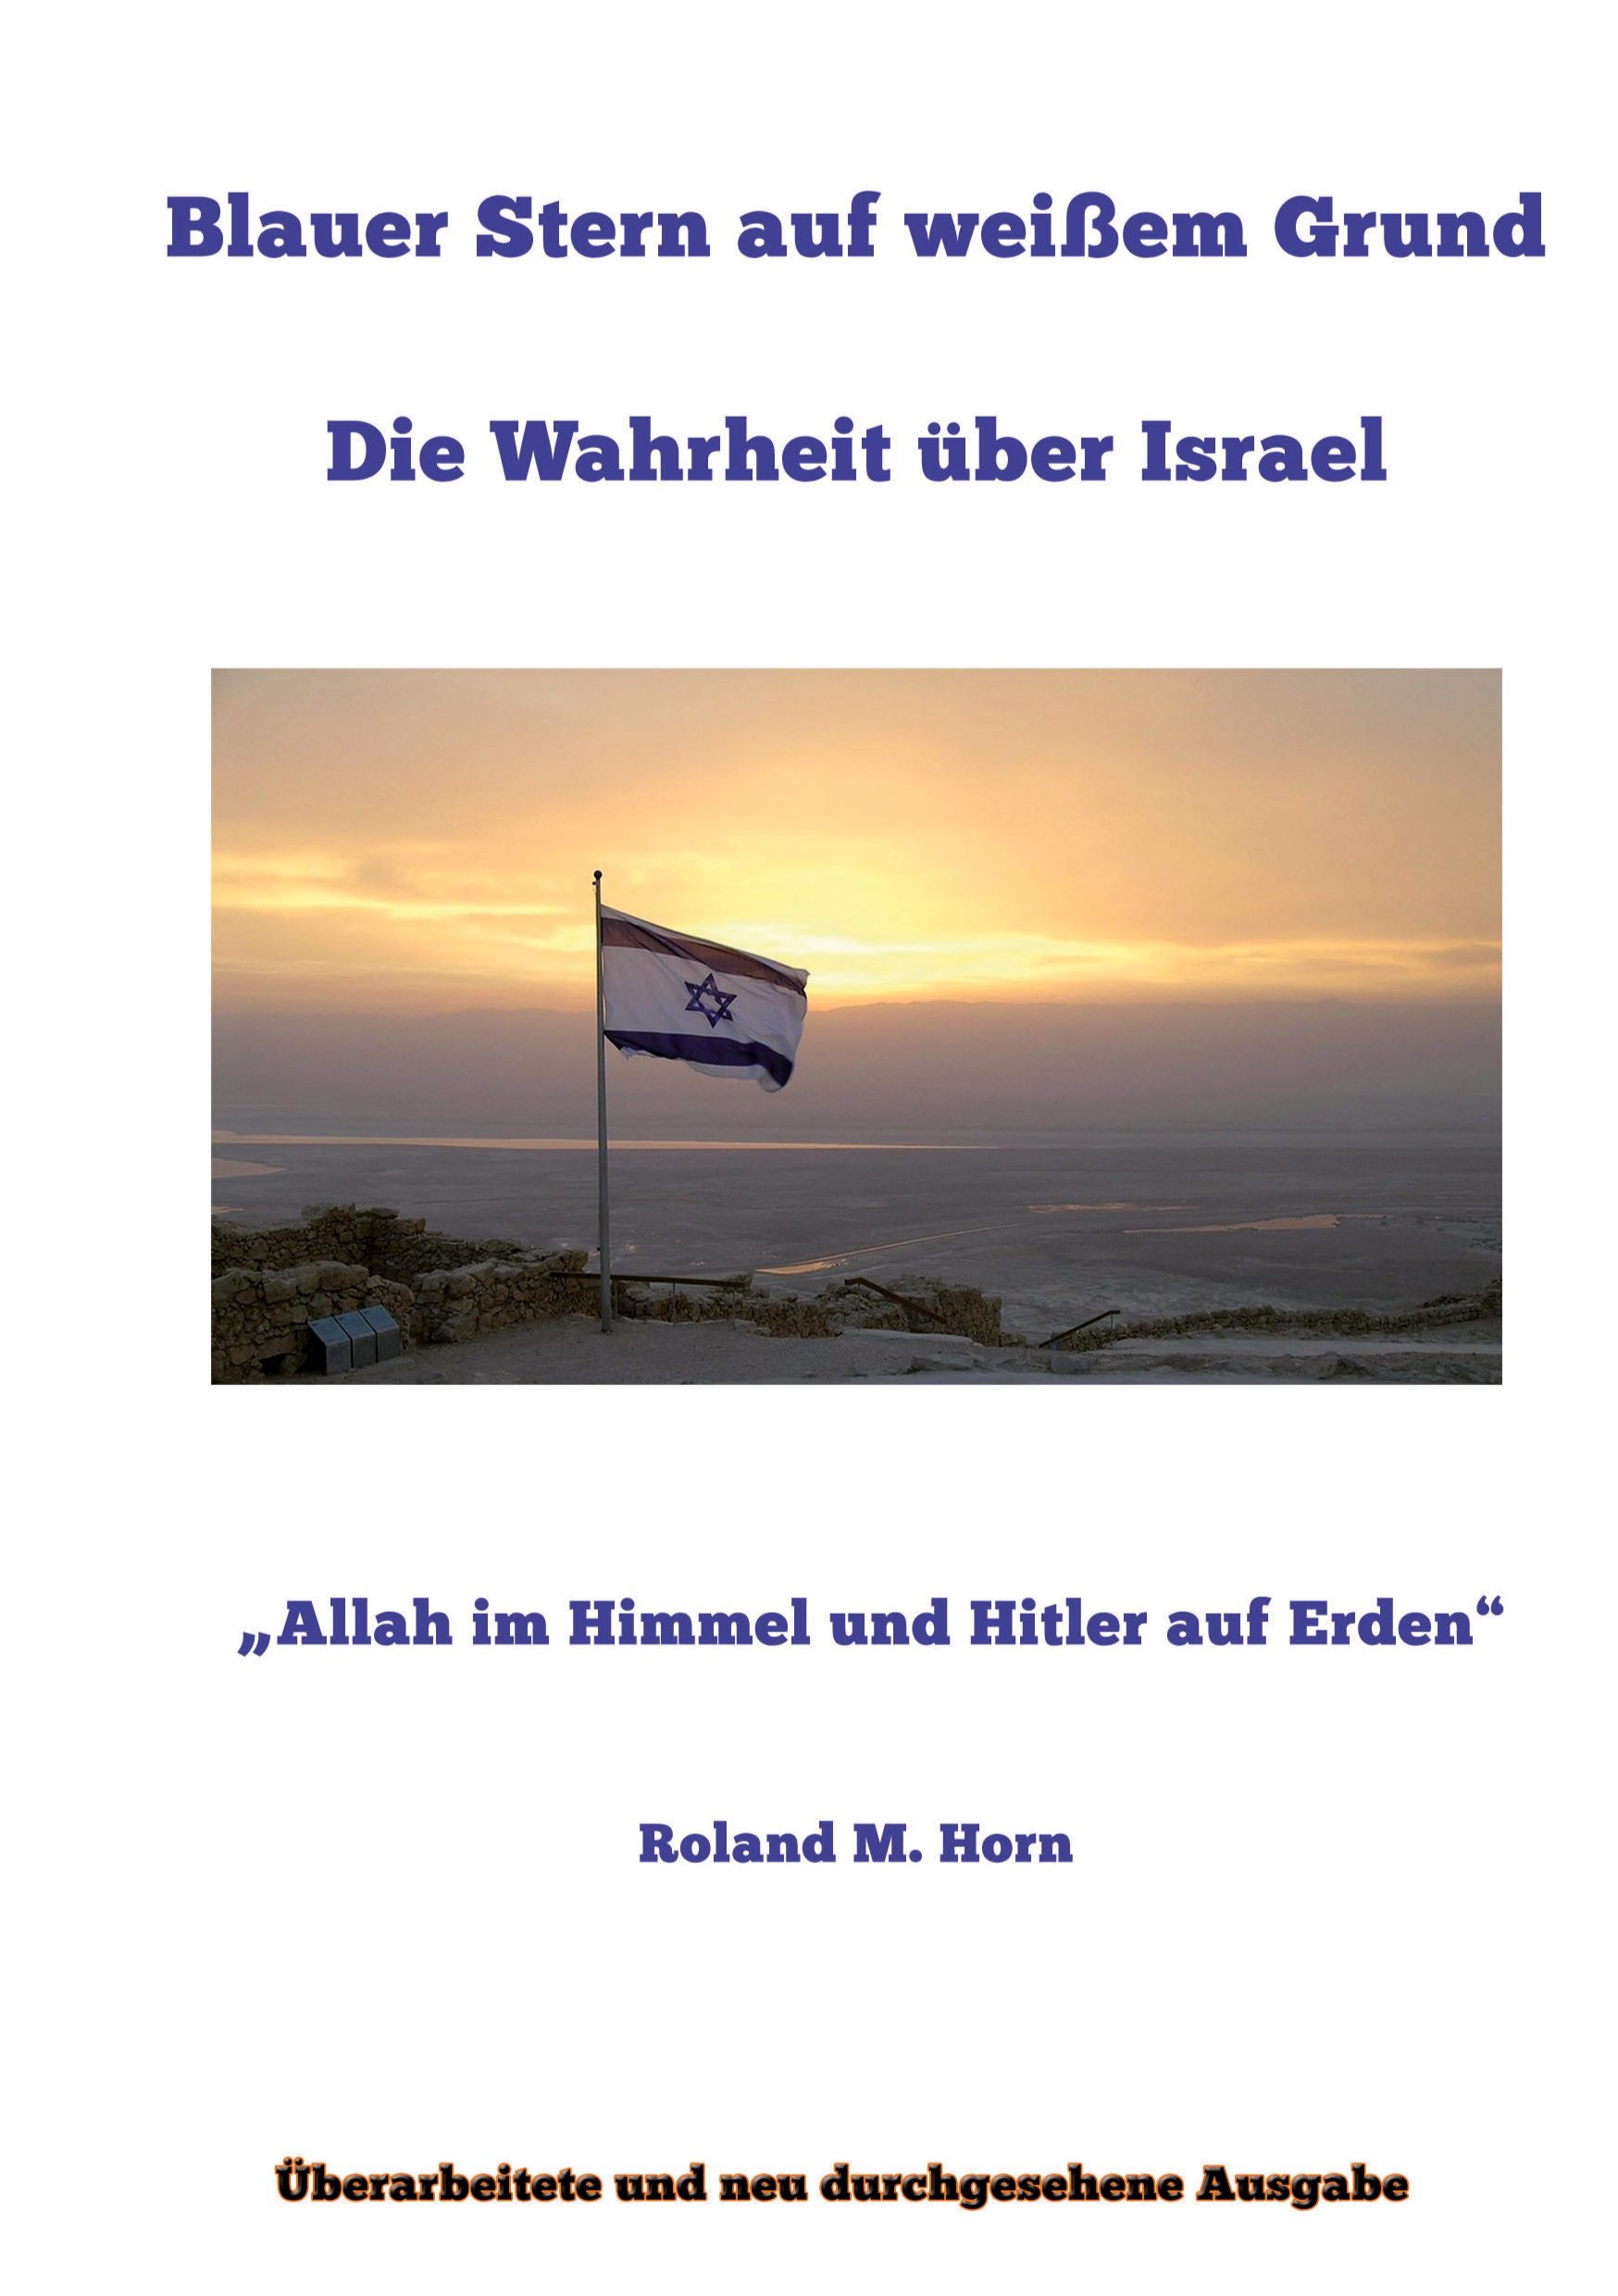 Deutsche-Politik-News.de | Cover: Blauer Stern auf weißem Grund - Die Wahrheit über Israel